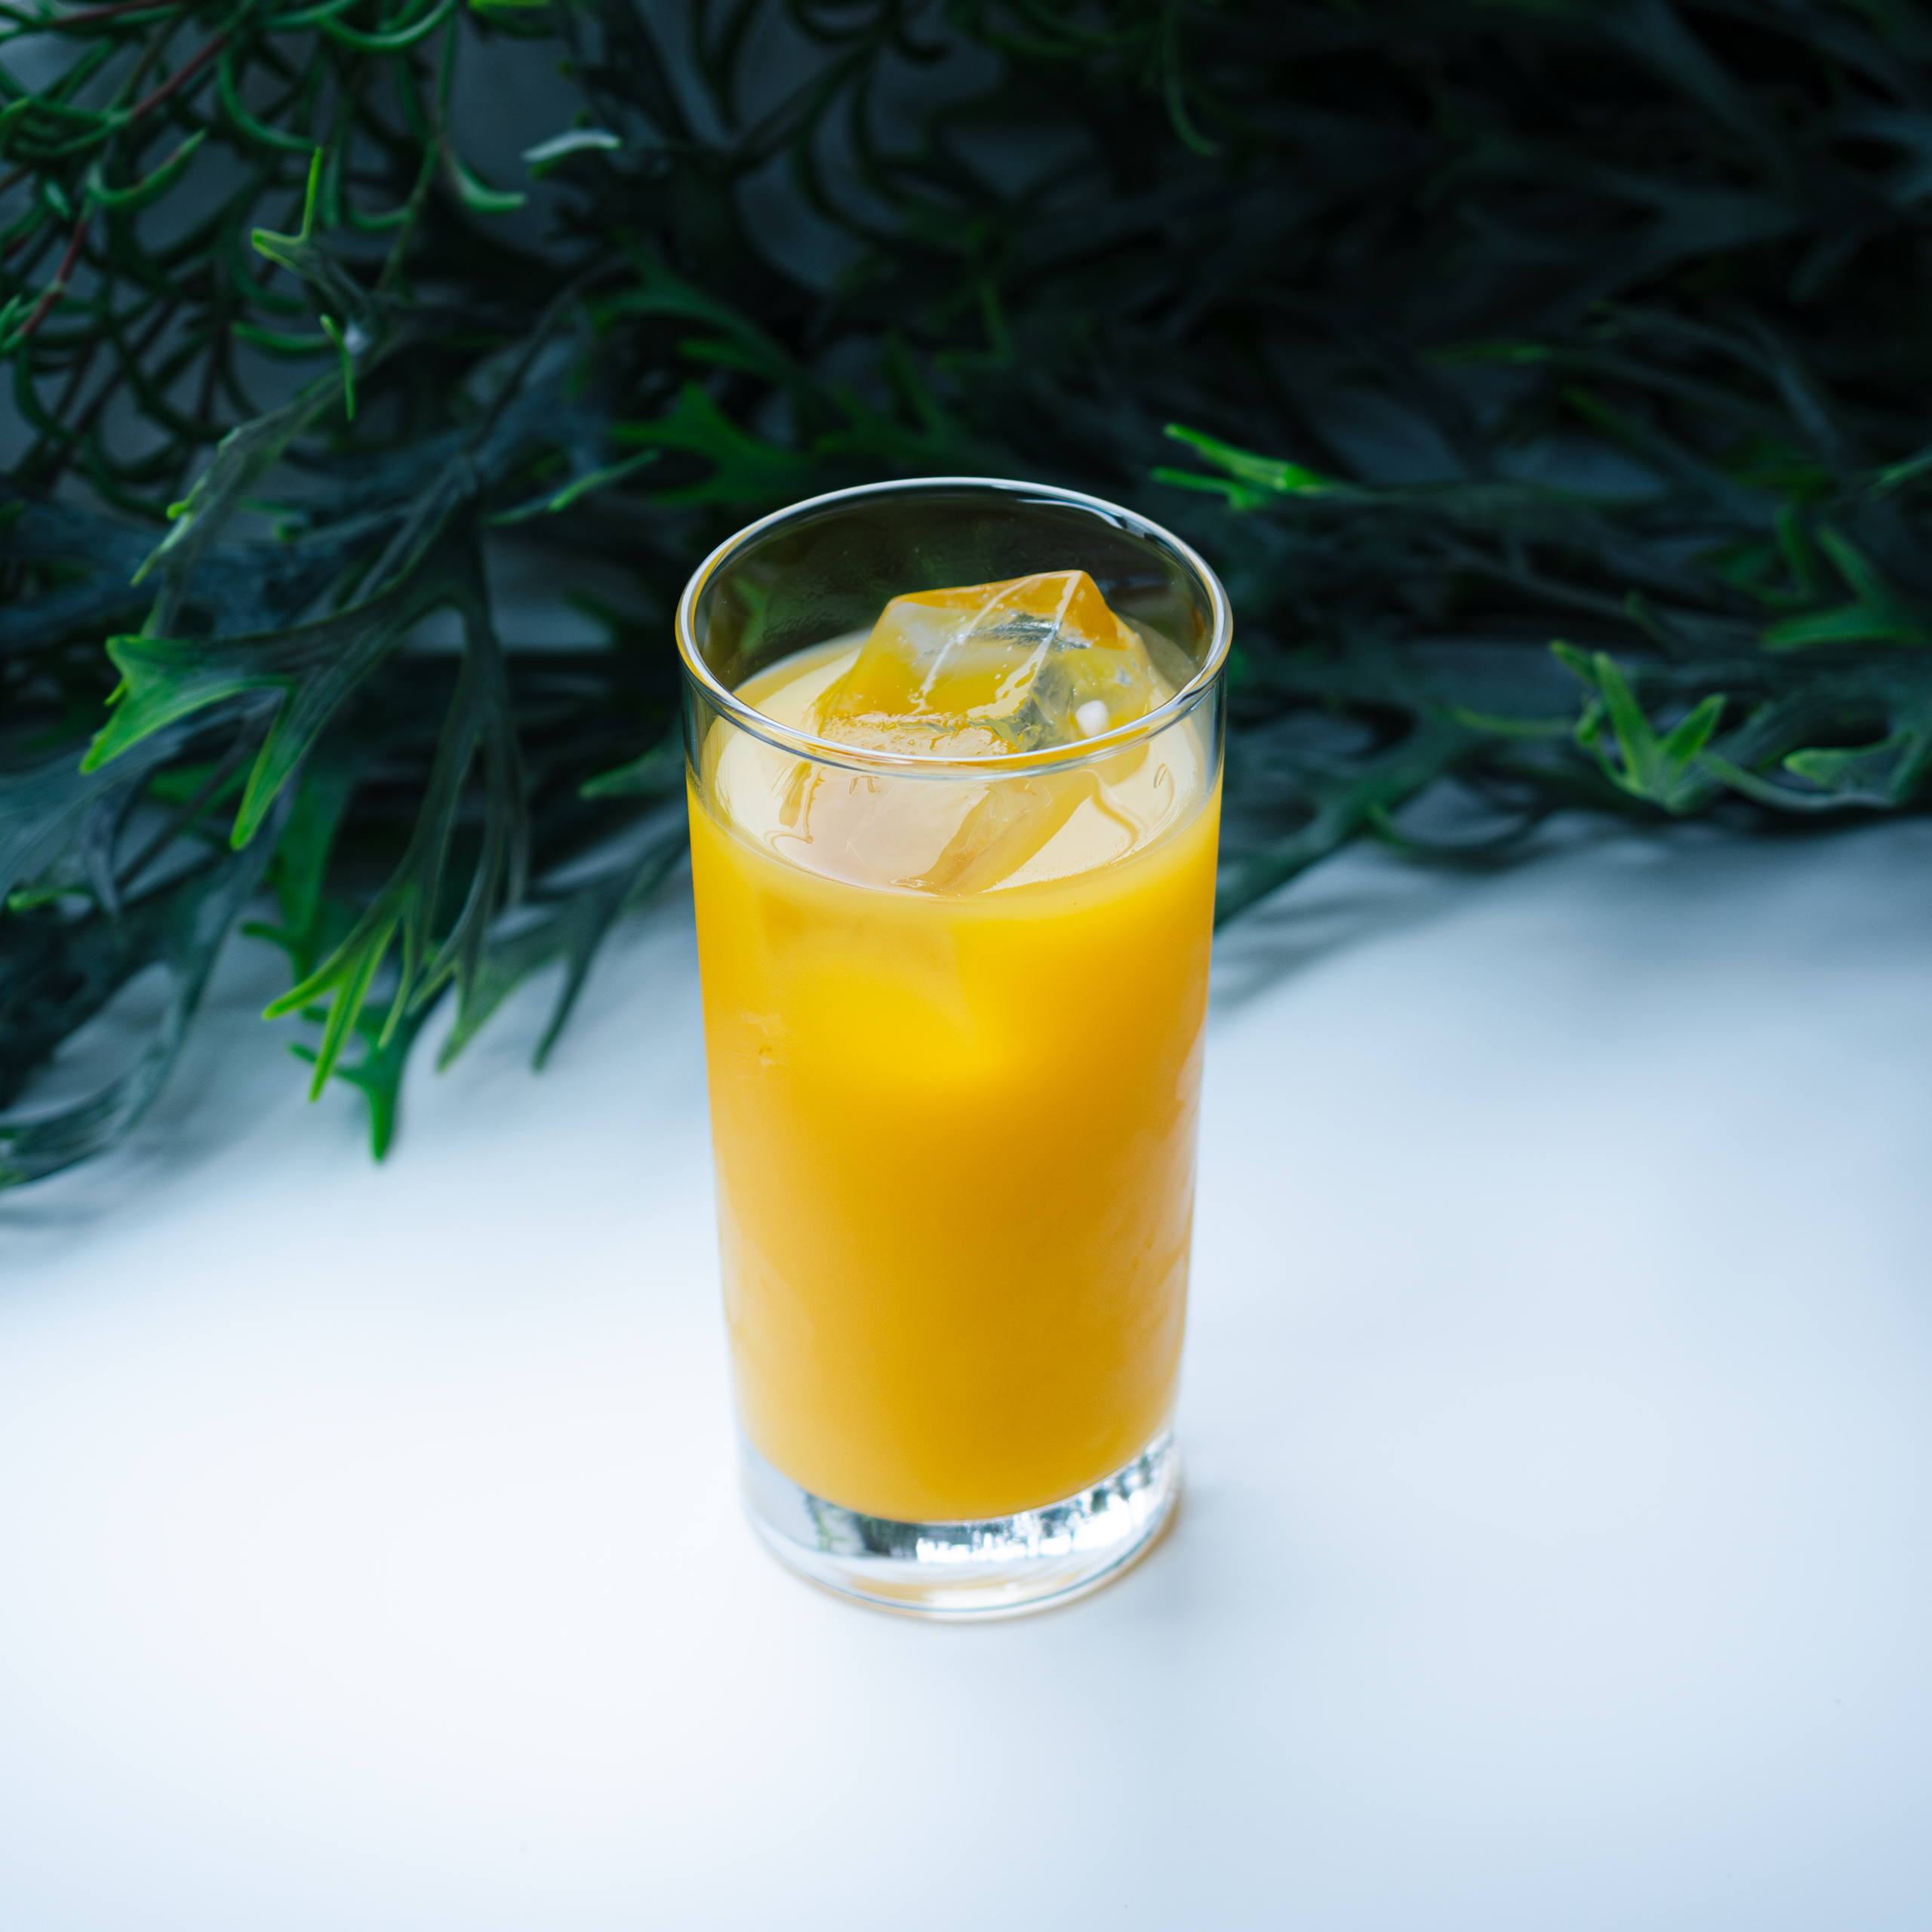 こちらのマンゴージュース、
味が濃厚で舌触りも滑らかでとっても美味しいんです😚😚
⭐︎スタッフの中でもとっても好評です⭐︎
マンゴージュースとオレンジジュースをミックスした
「マンゴーオレンジジュース」もあるので、
そちらもぜひ飲んでみてくださいね🍊🥭